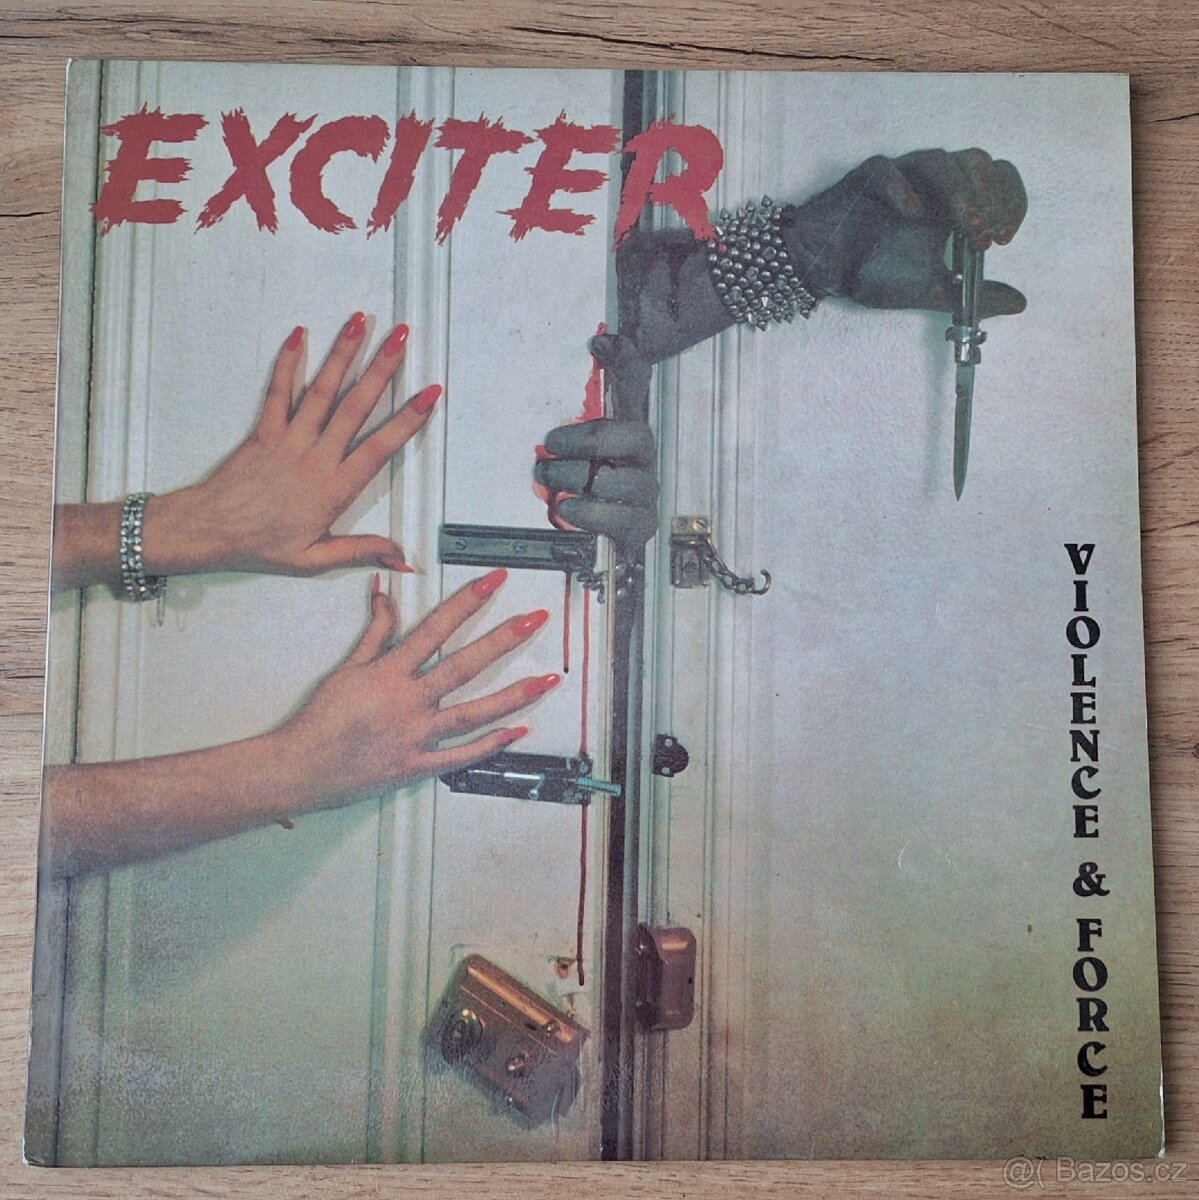 Exciter-Violence & Force, LP